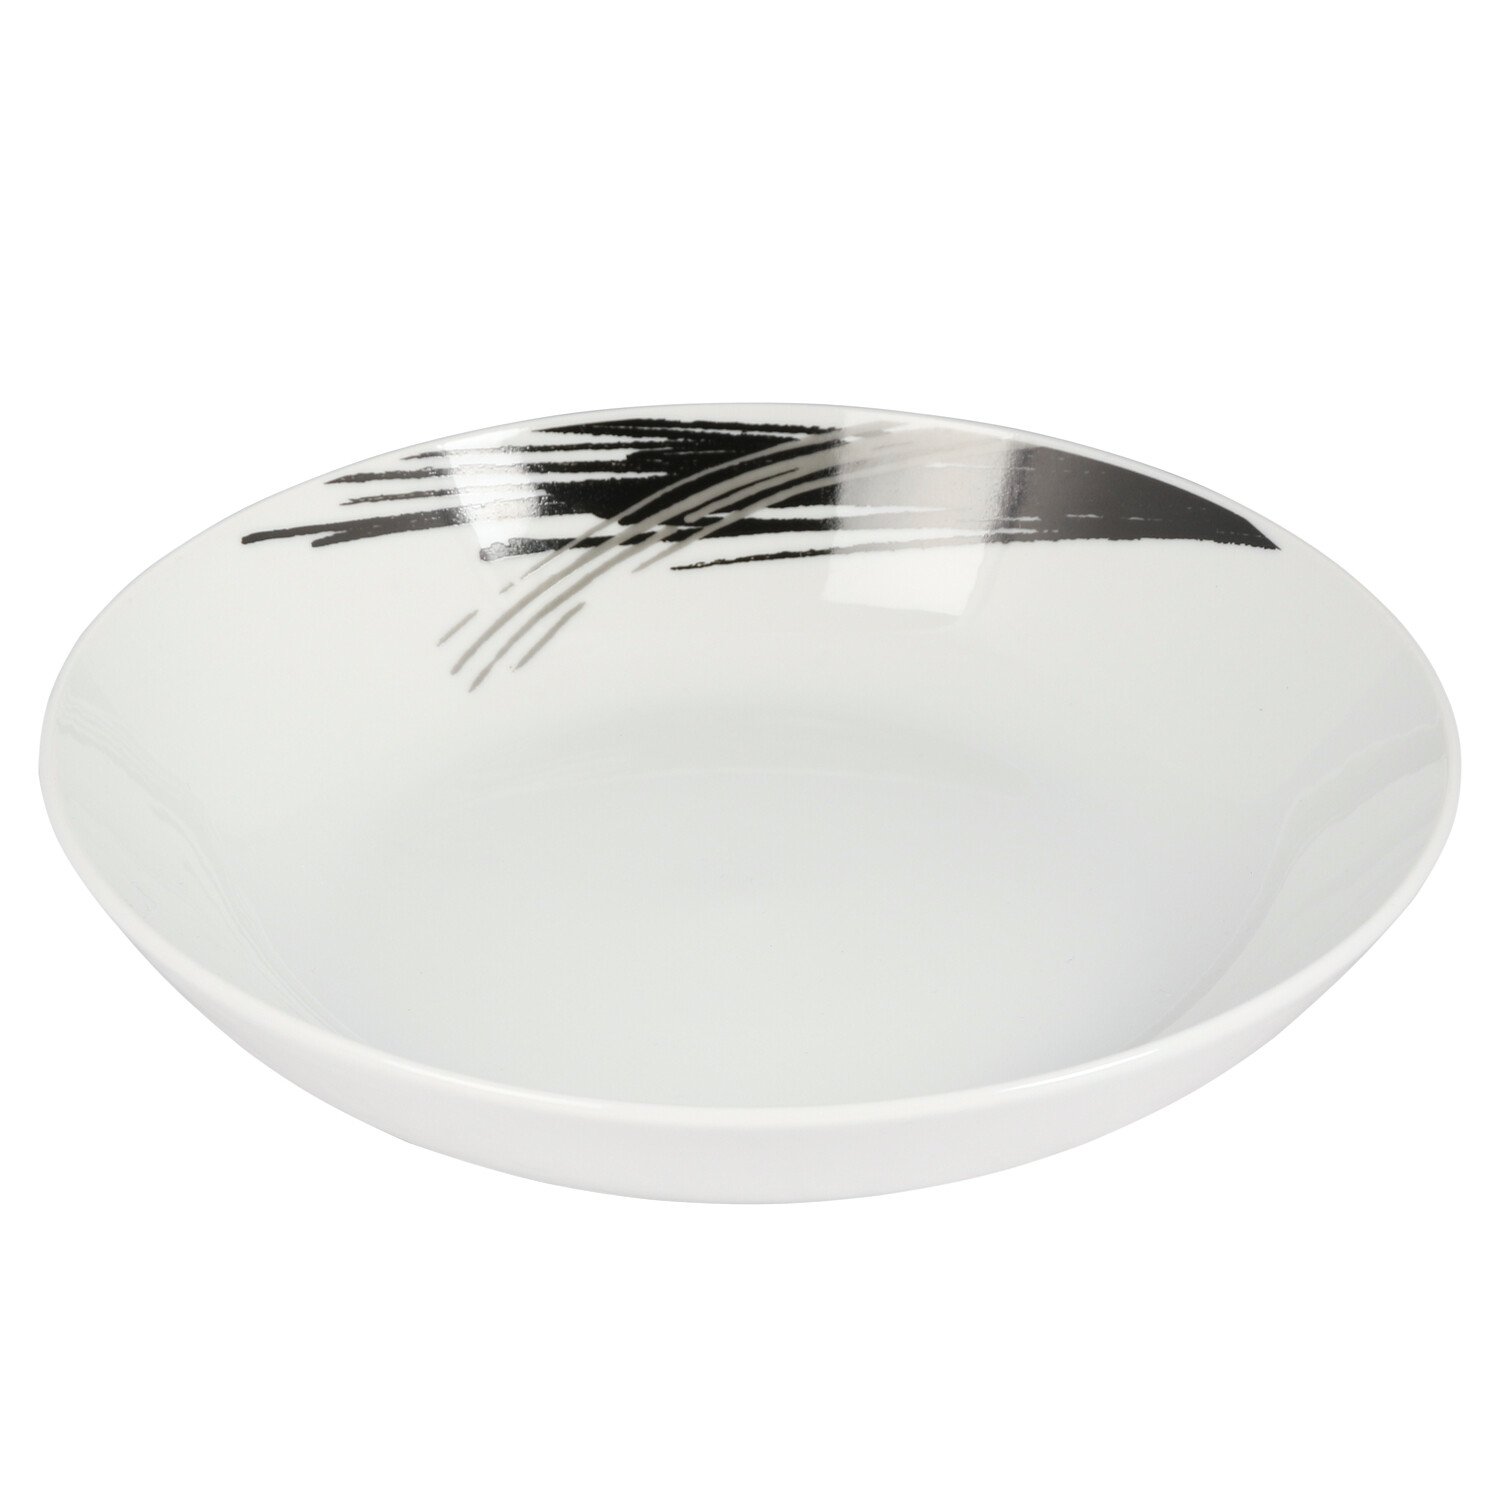 Stria Coupe Pasta Bowl - White Image